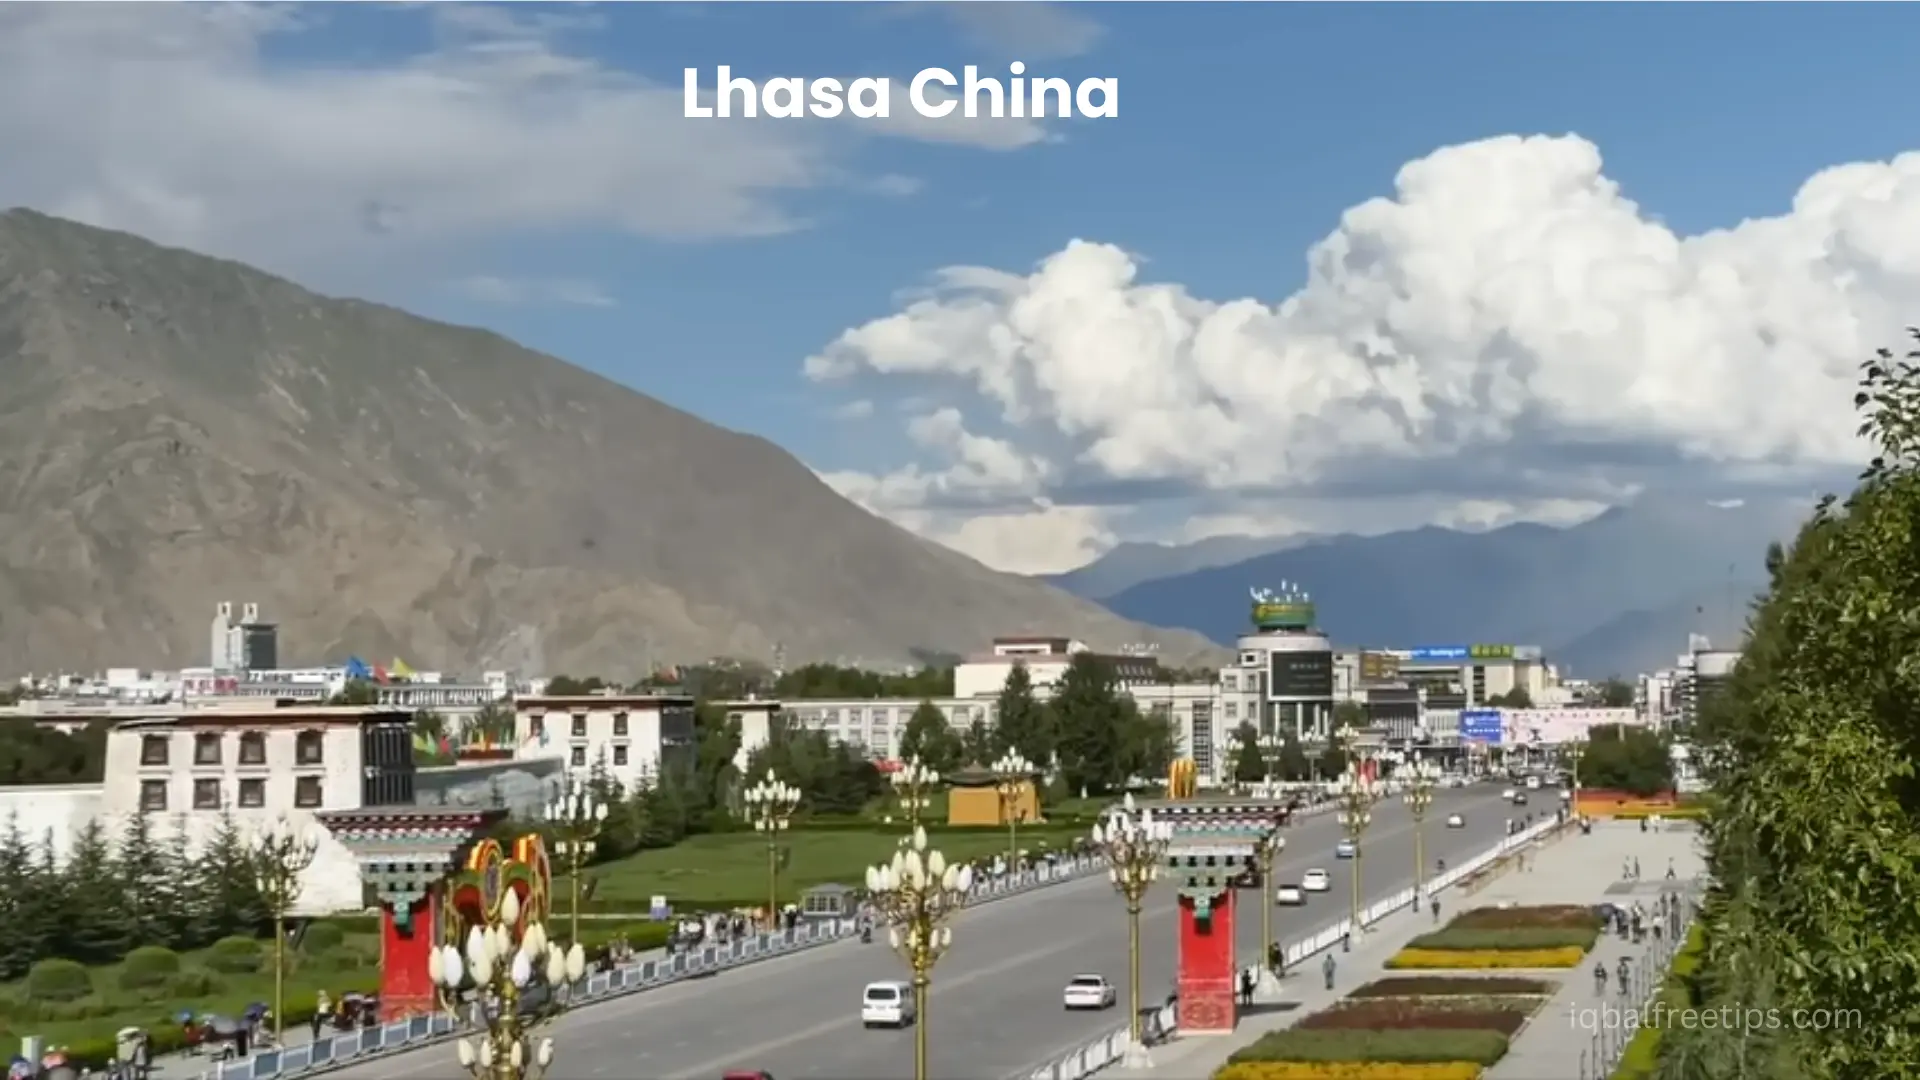 Lhasa China